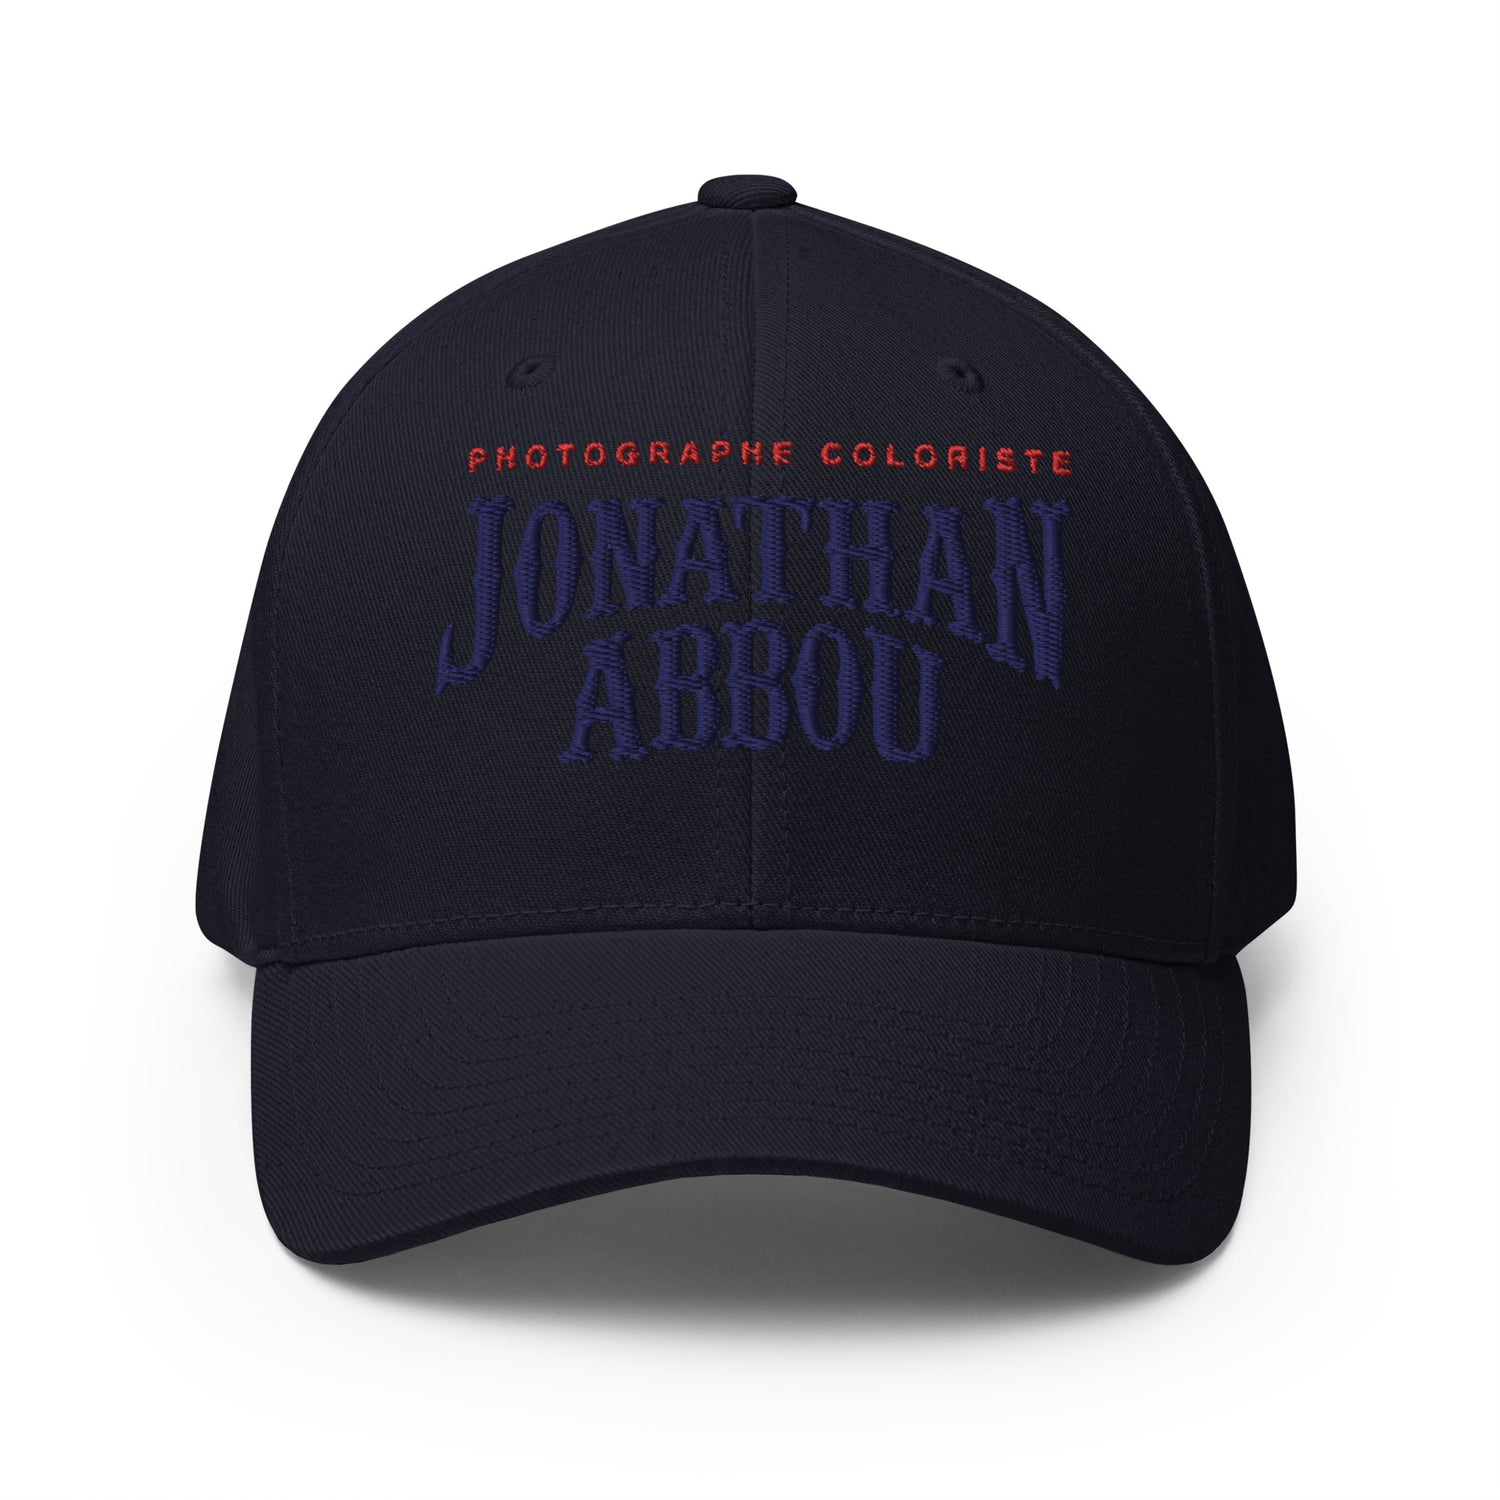 Jonathan abbou - Casquette Structurée en Sergé - logo